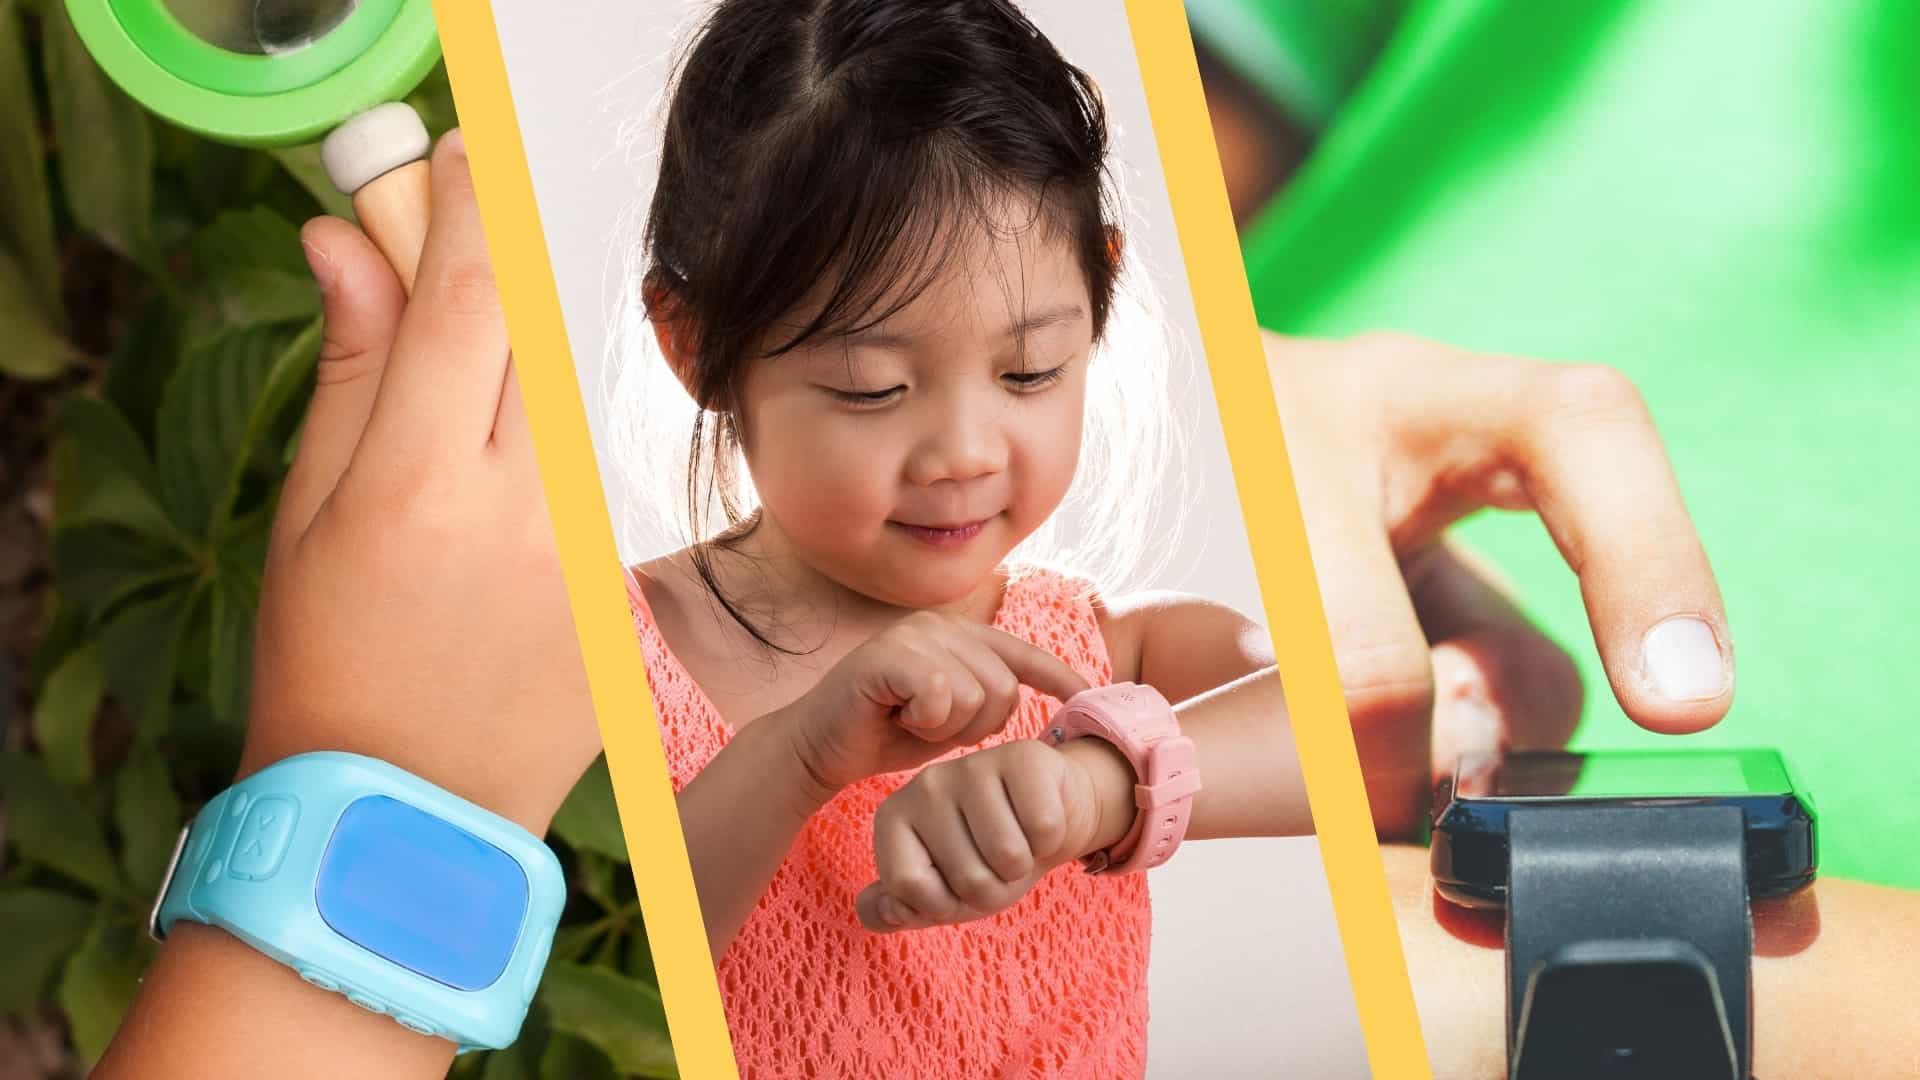 7 Beste Smartwatches Voor Kinderen Getest: Dít Zijn De Resultaten